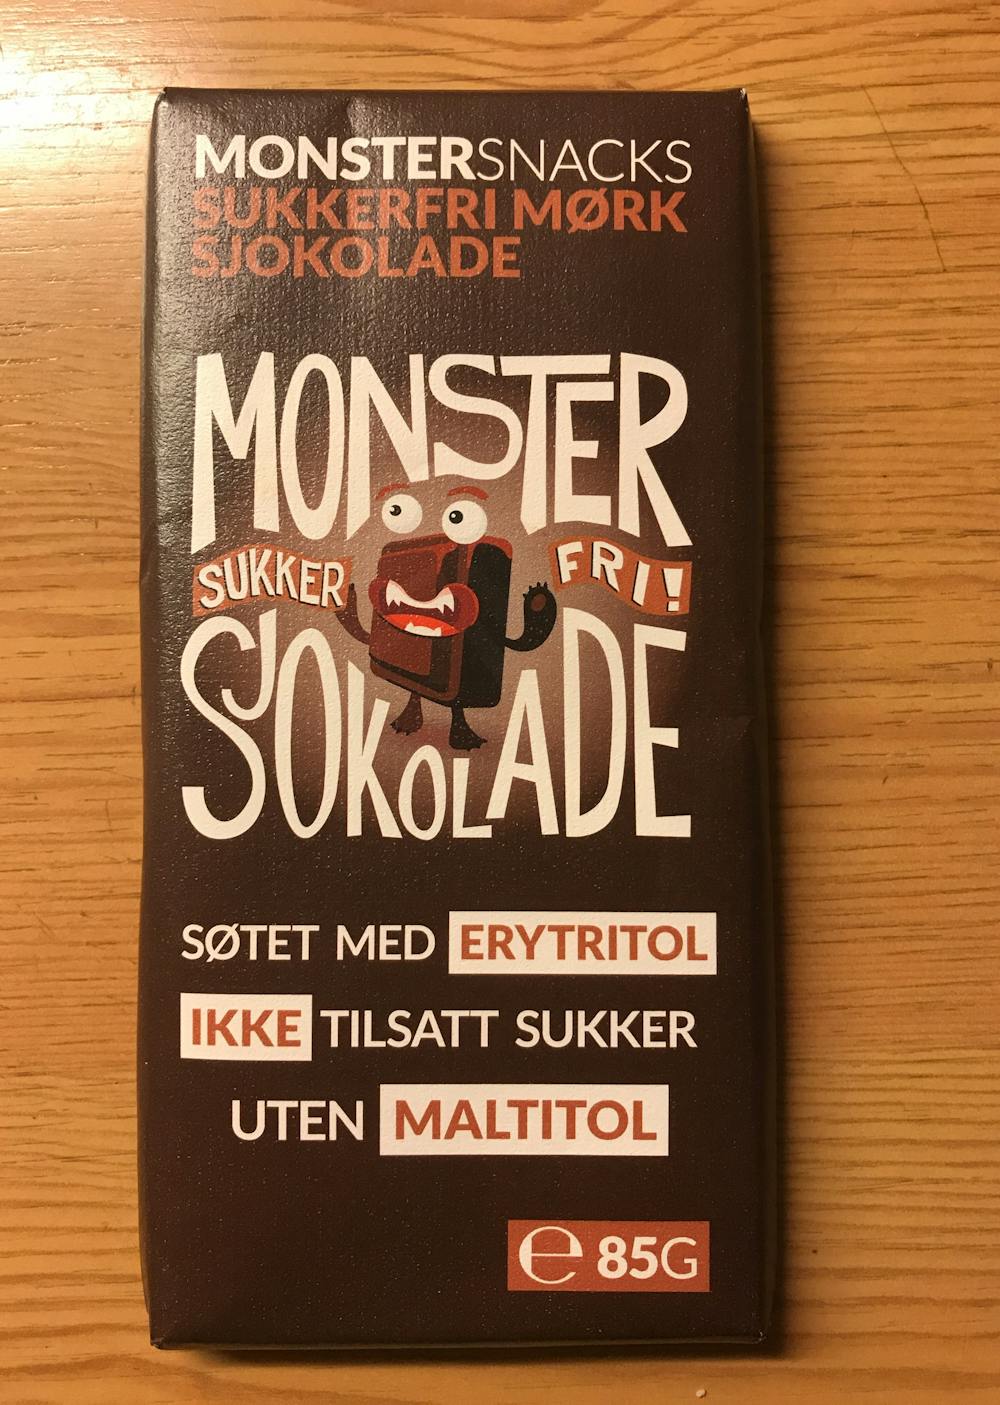 Sukkerfri sjokolade, Monster